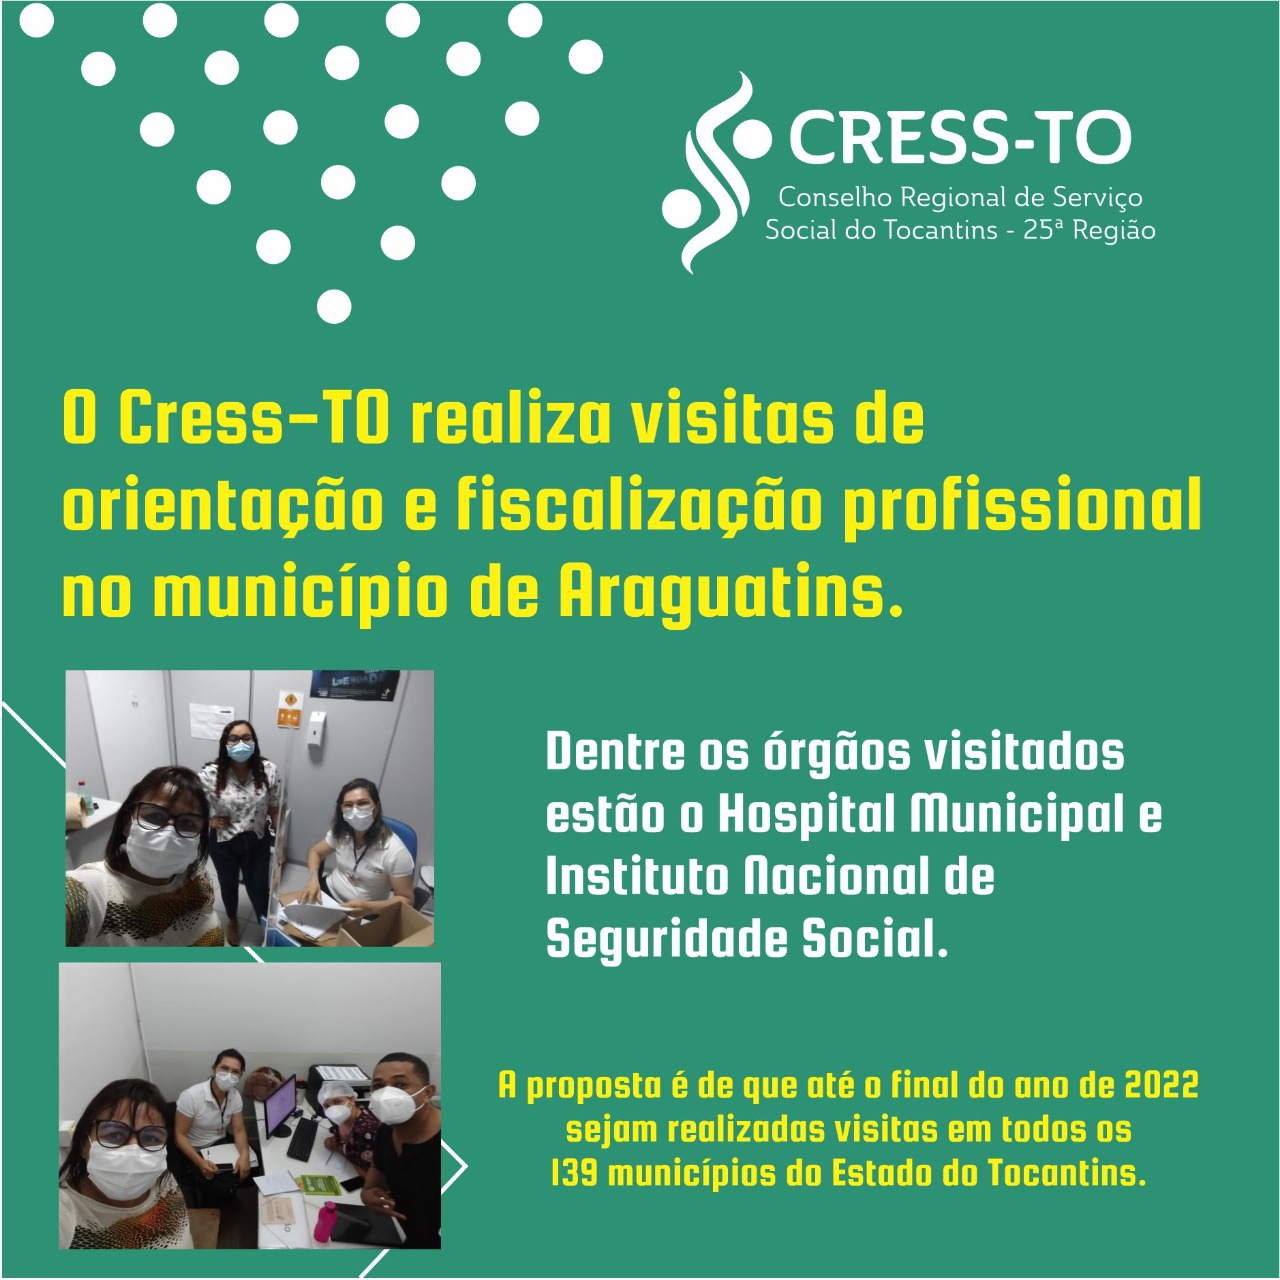 Cress-TO realiza visitas de Orientação e fiscalização profissional no município de Araguantins-TO